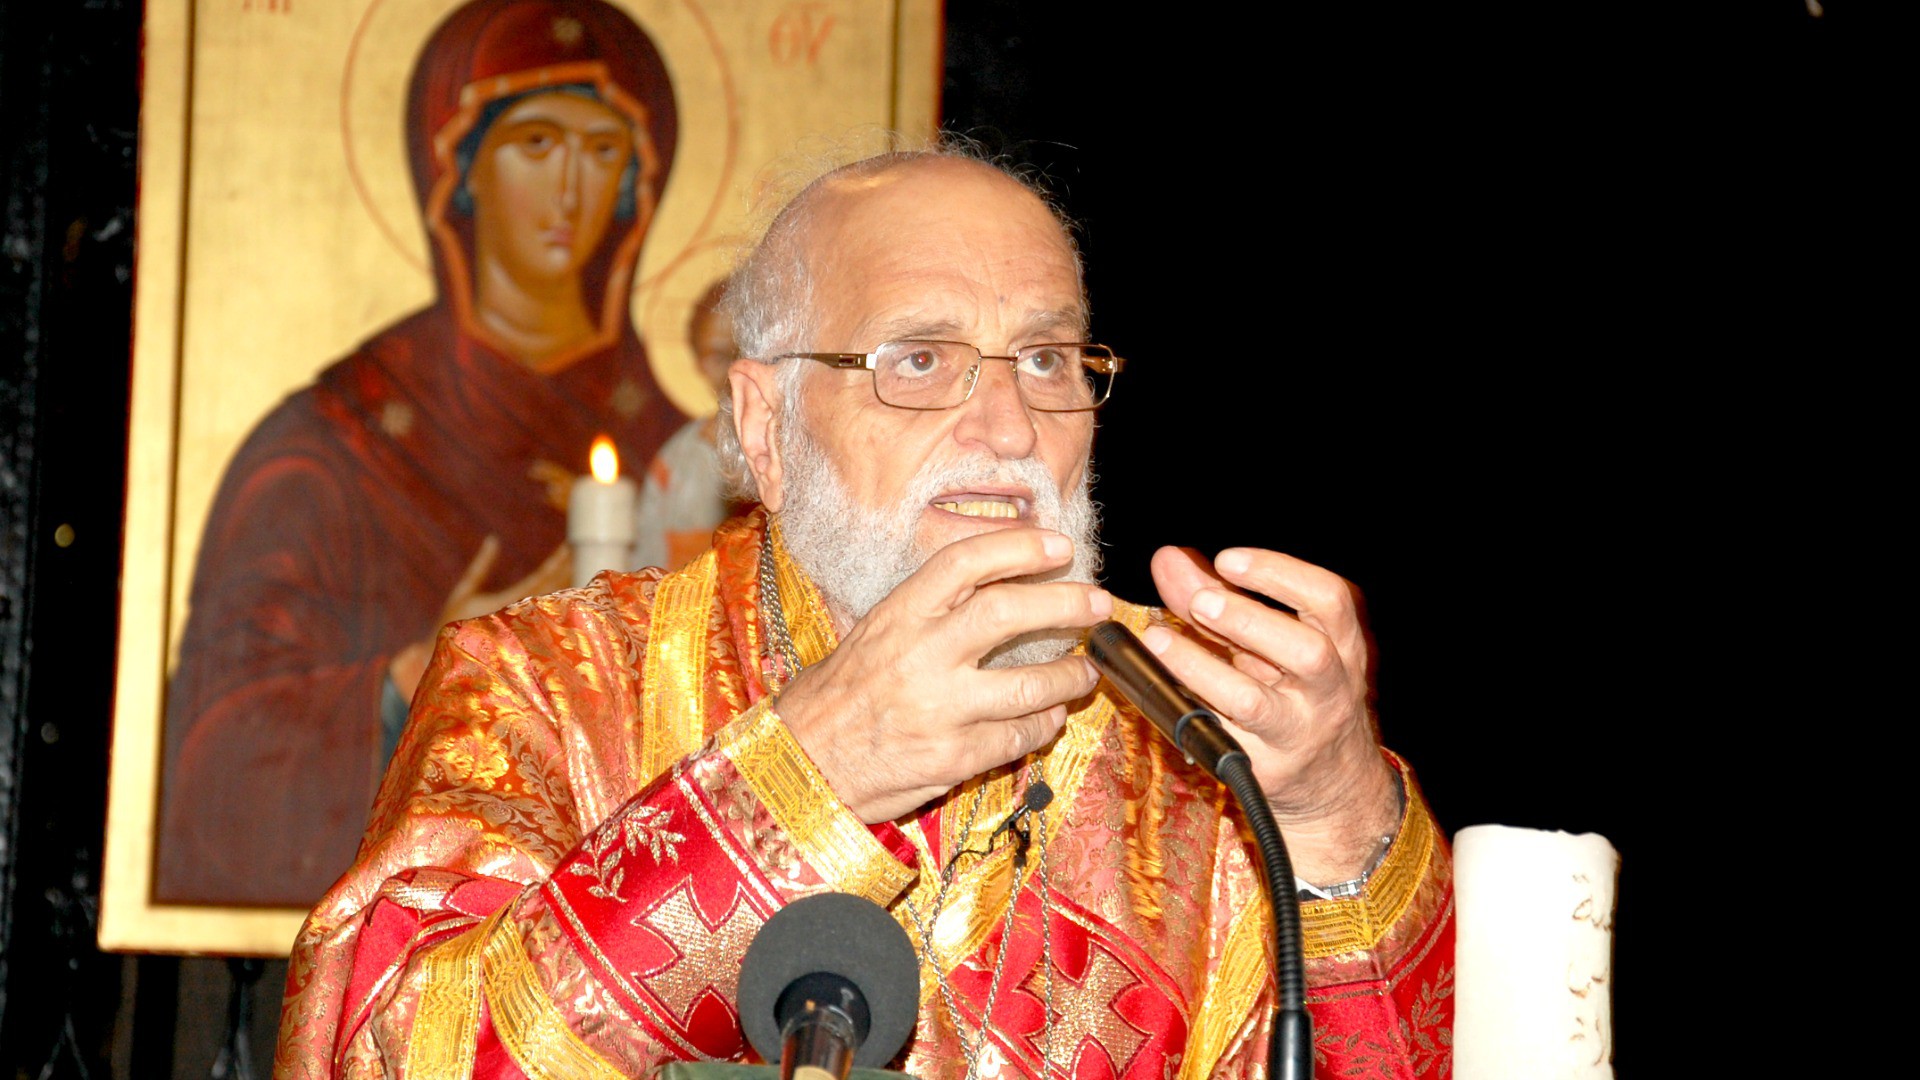 Syrie Patriarche Grégoire III Laham, chef de l'Eglise grecque-melkite catholique (Photo: Jacques Berset)
